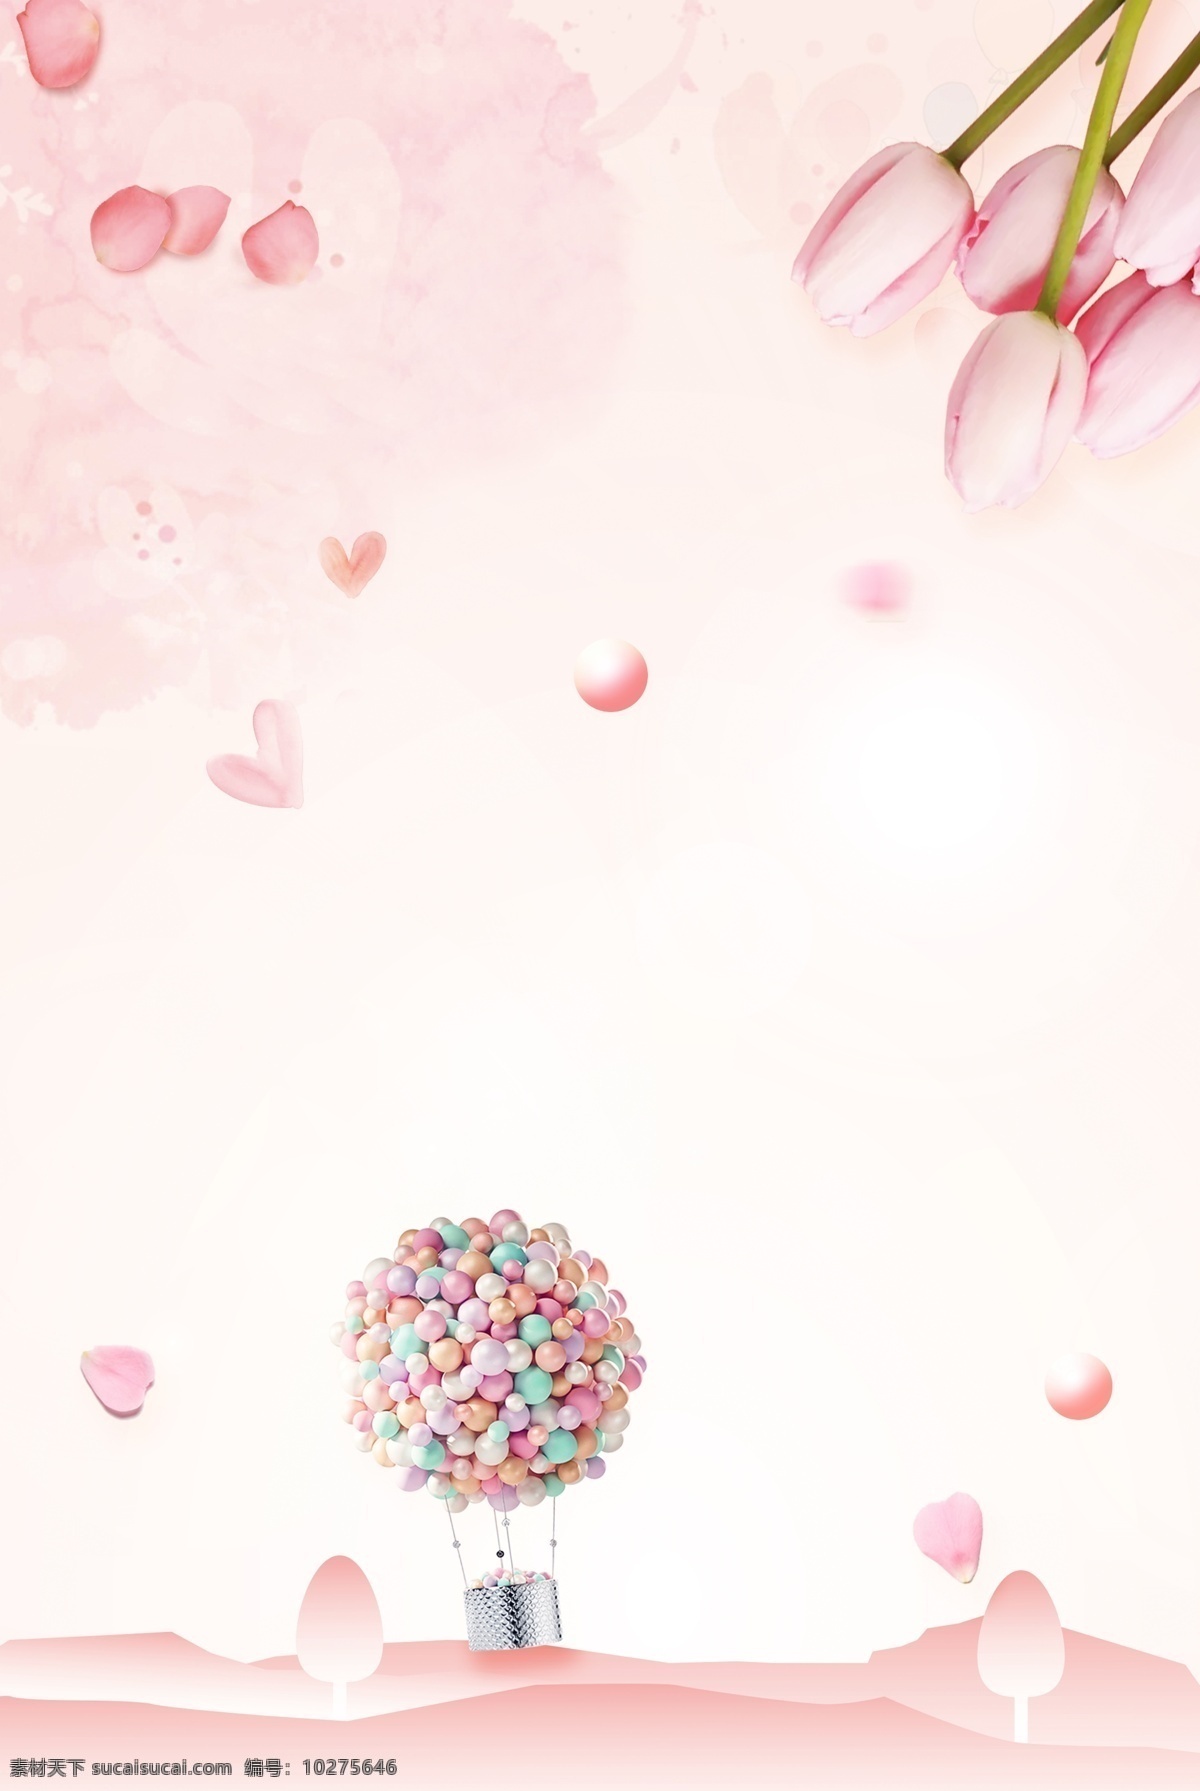 七夕 情人节 活动 热气球 海报 促销 活动宣传 温馨 浪漫 文艺 清新